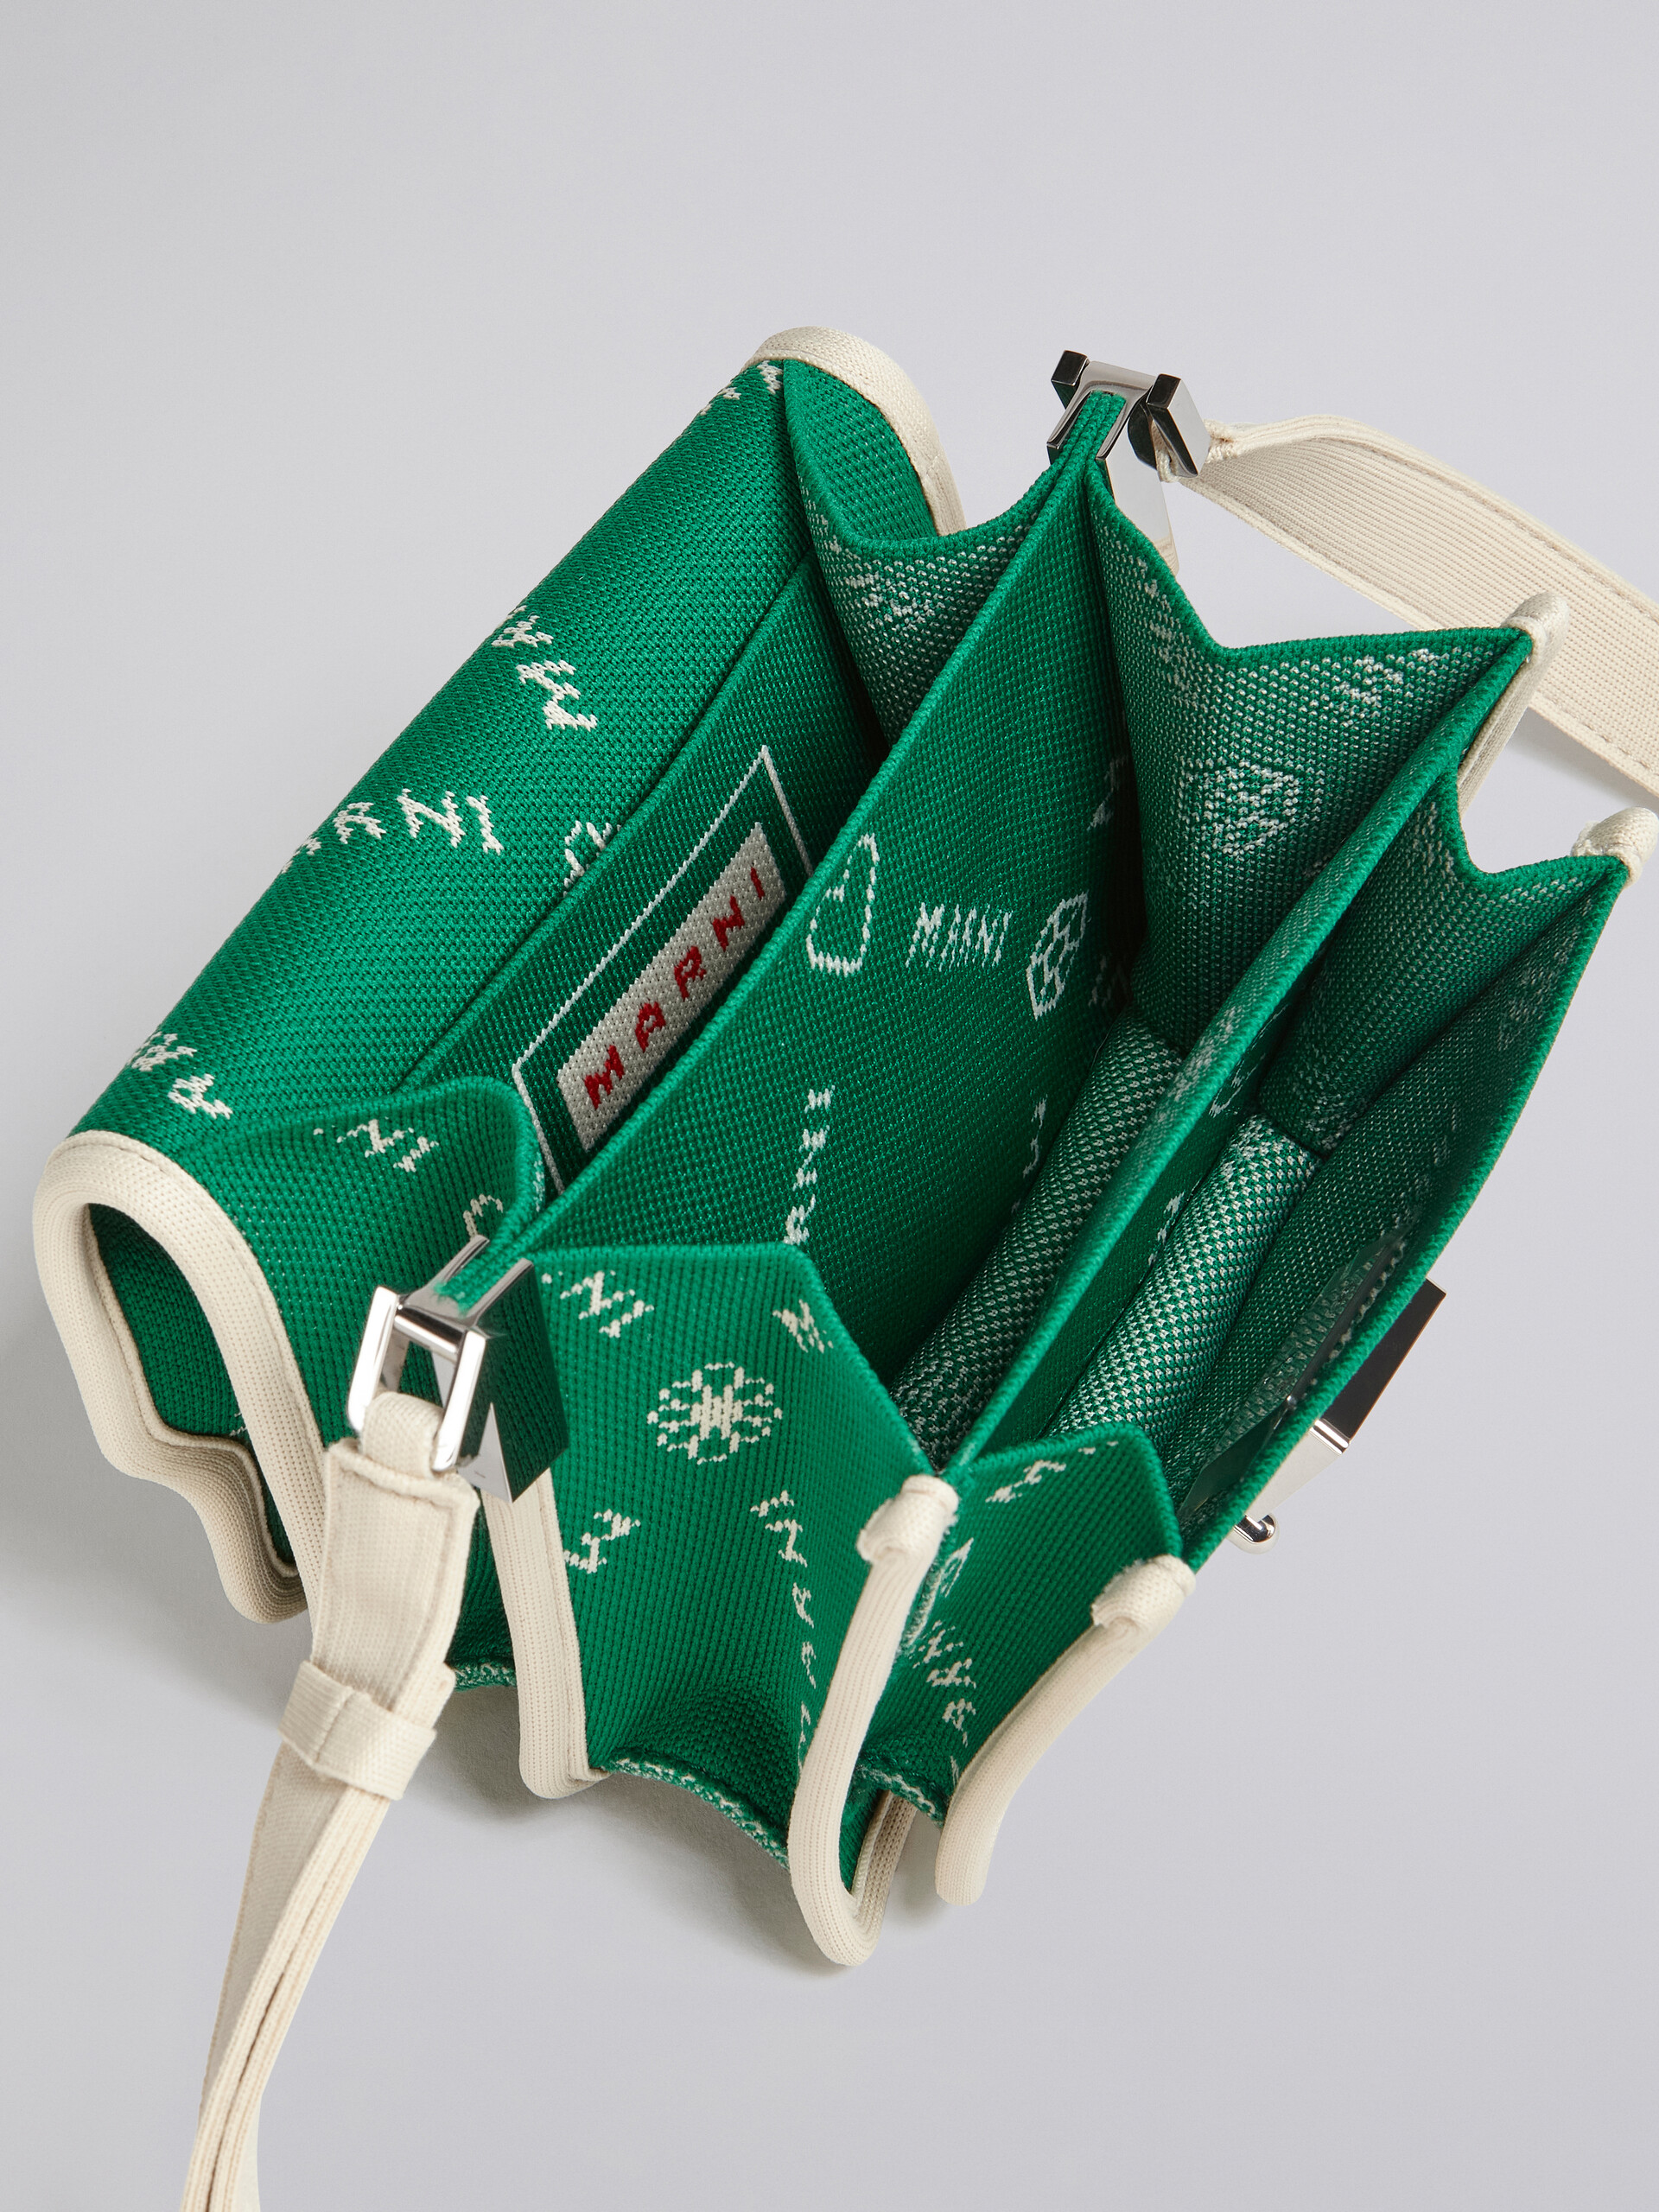 TRUNK SOFT mini bag in green Marnigram jacquard - Shoulder Bags - Image 4